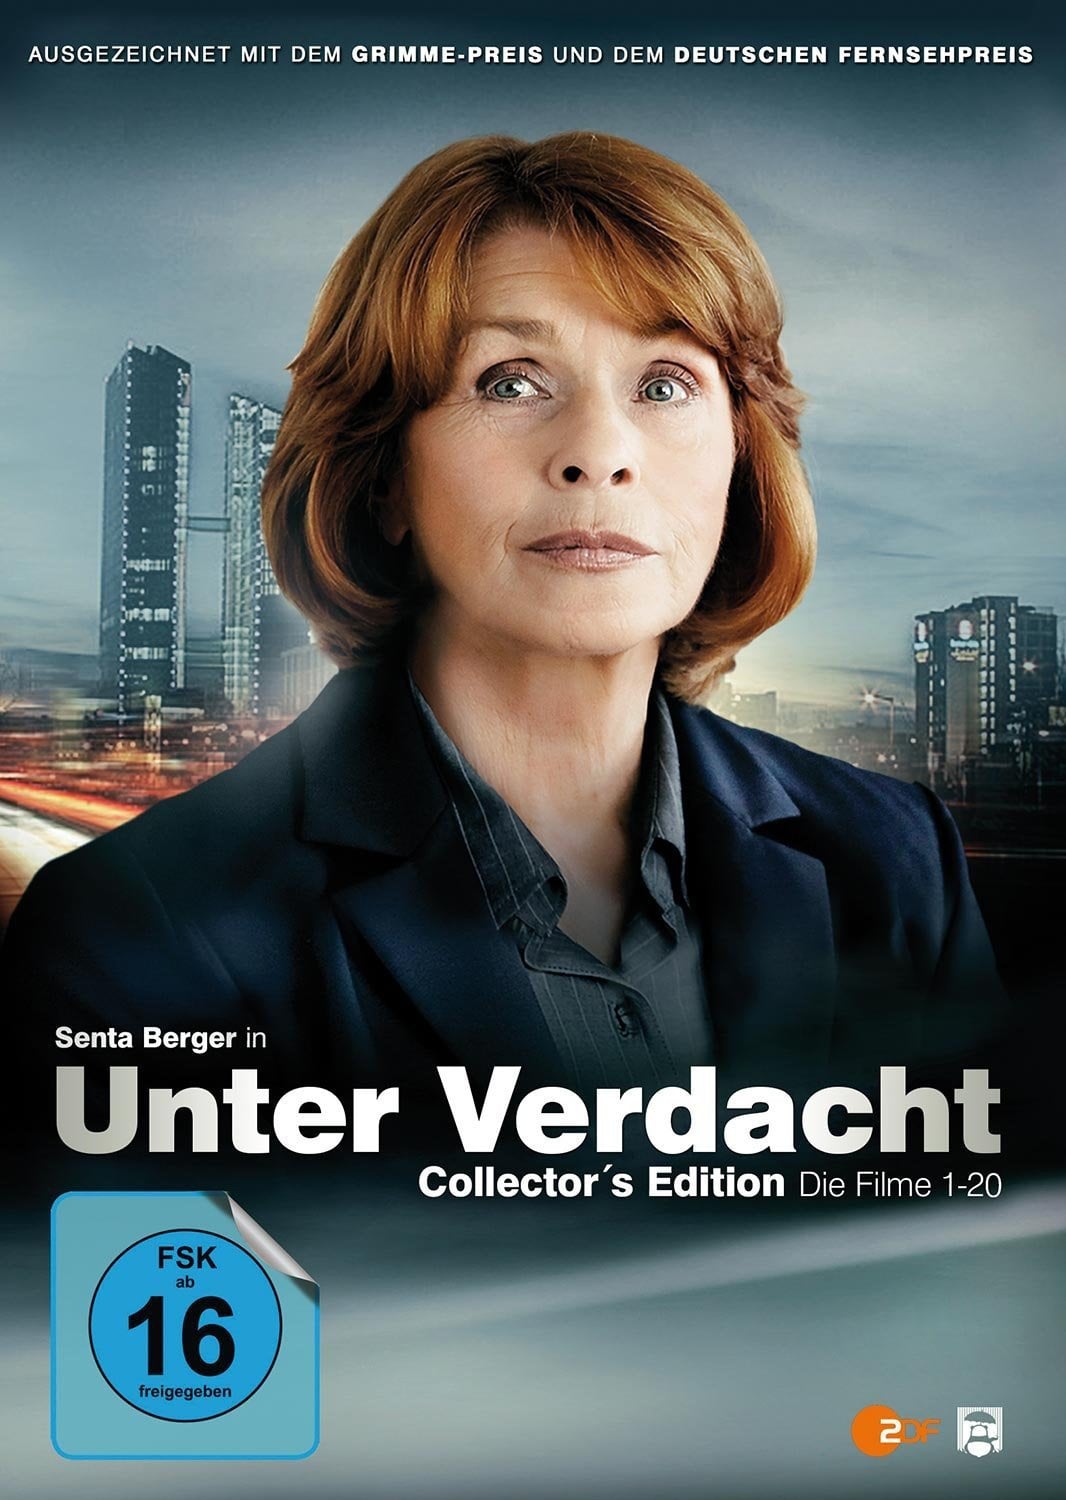 Under Suspicion (2002)